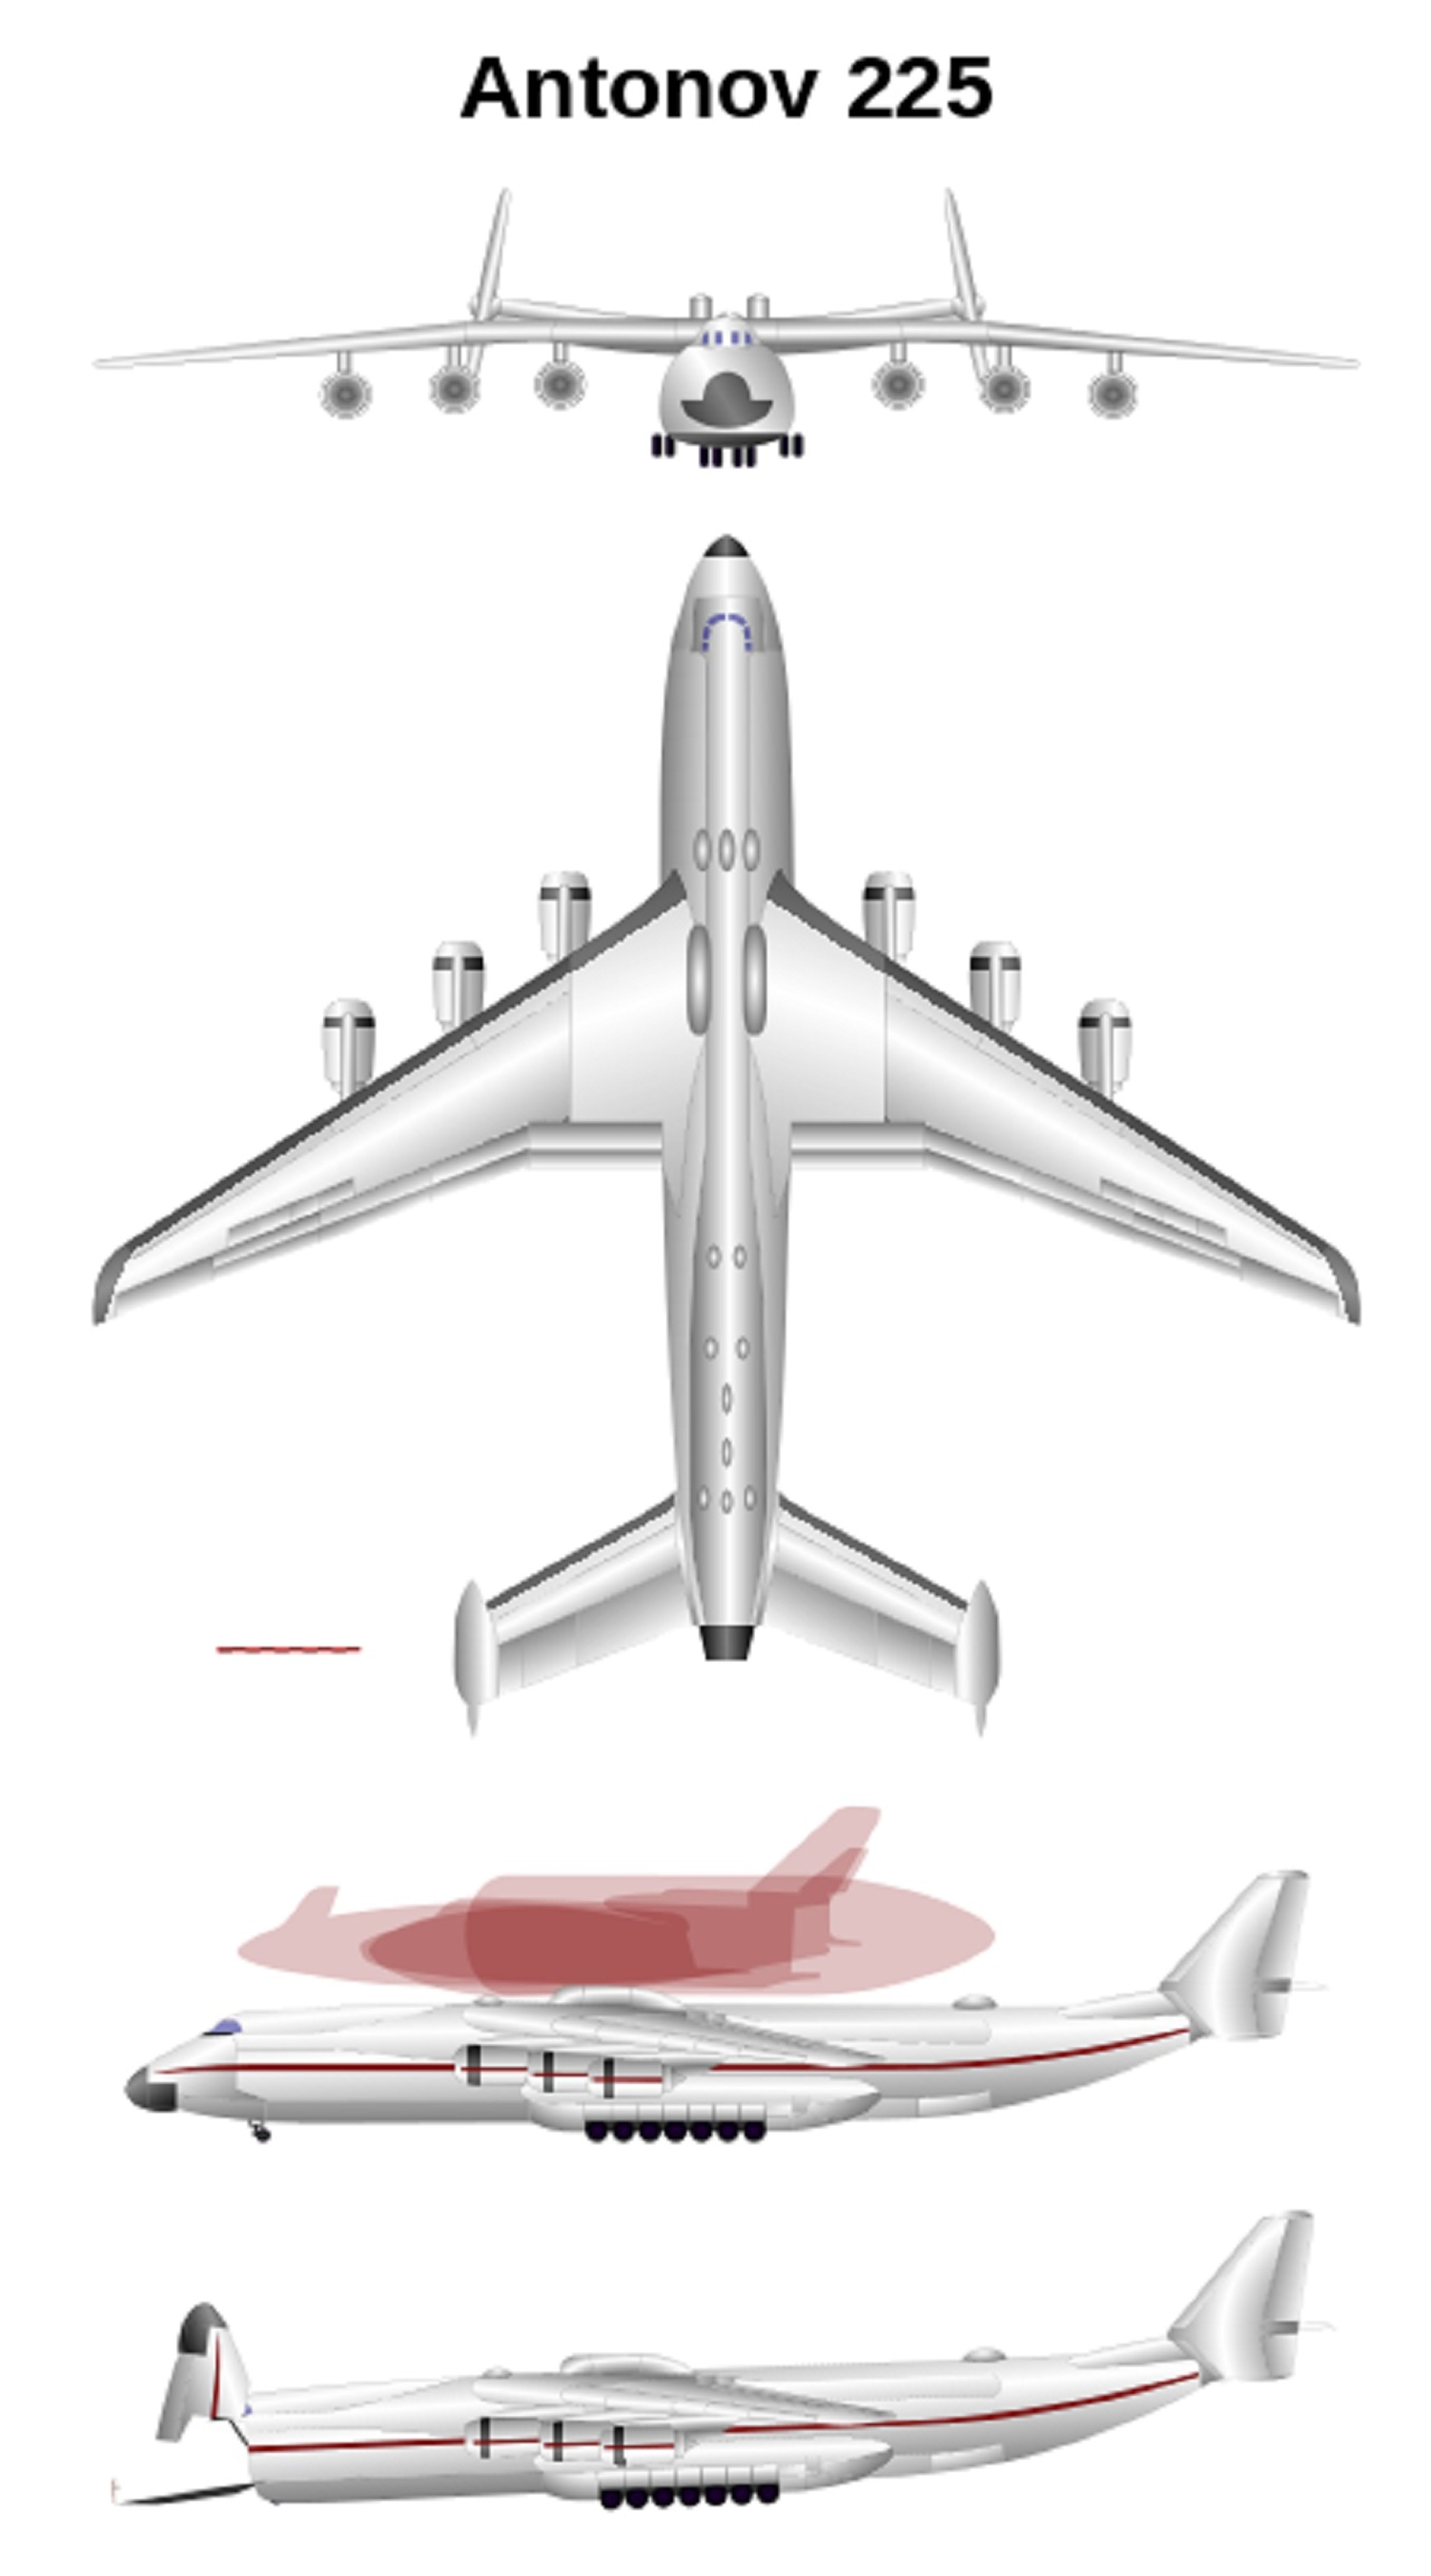 El An-225 puede transportar equipamiento militar, alimentos, locomotras y generadores eléctricos